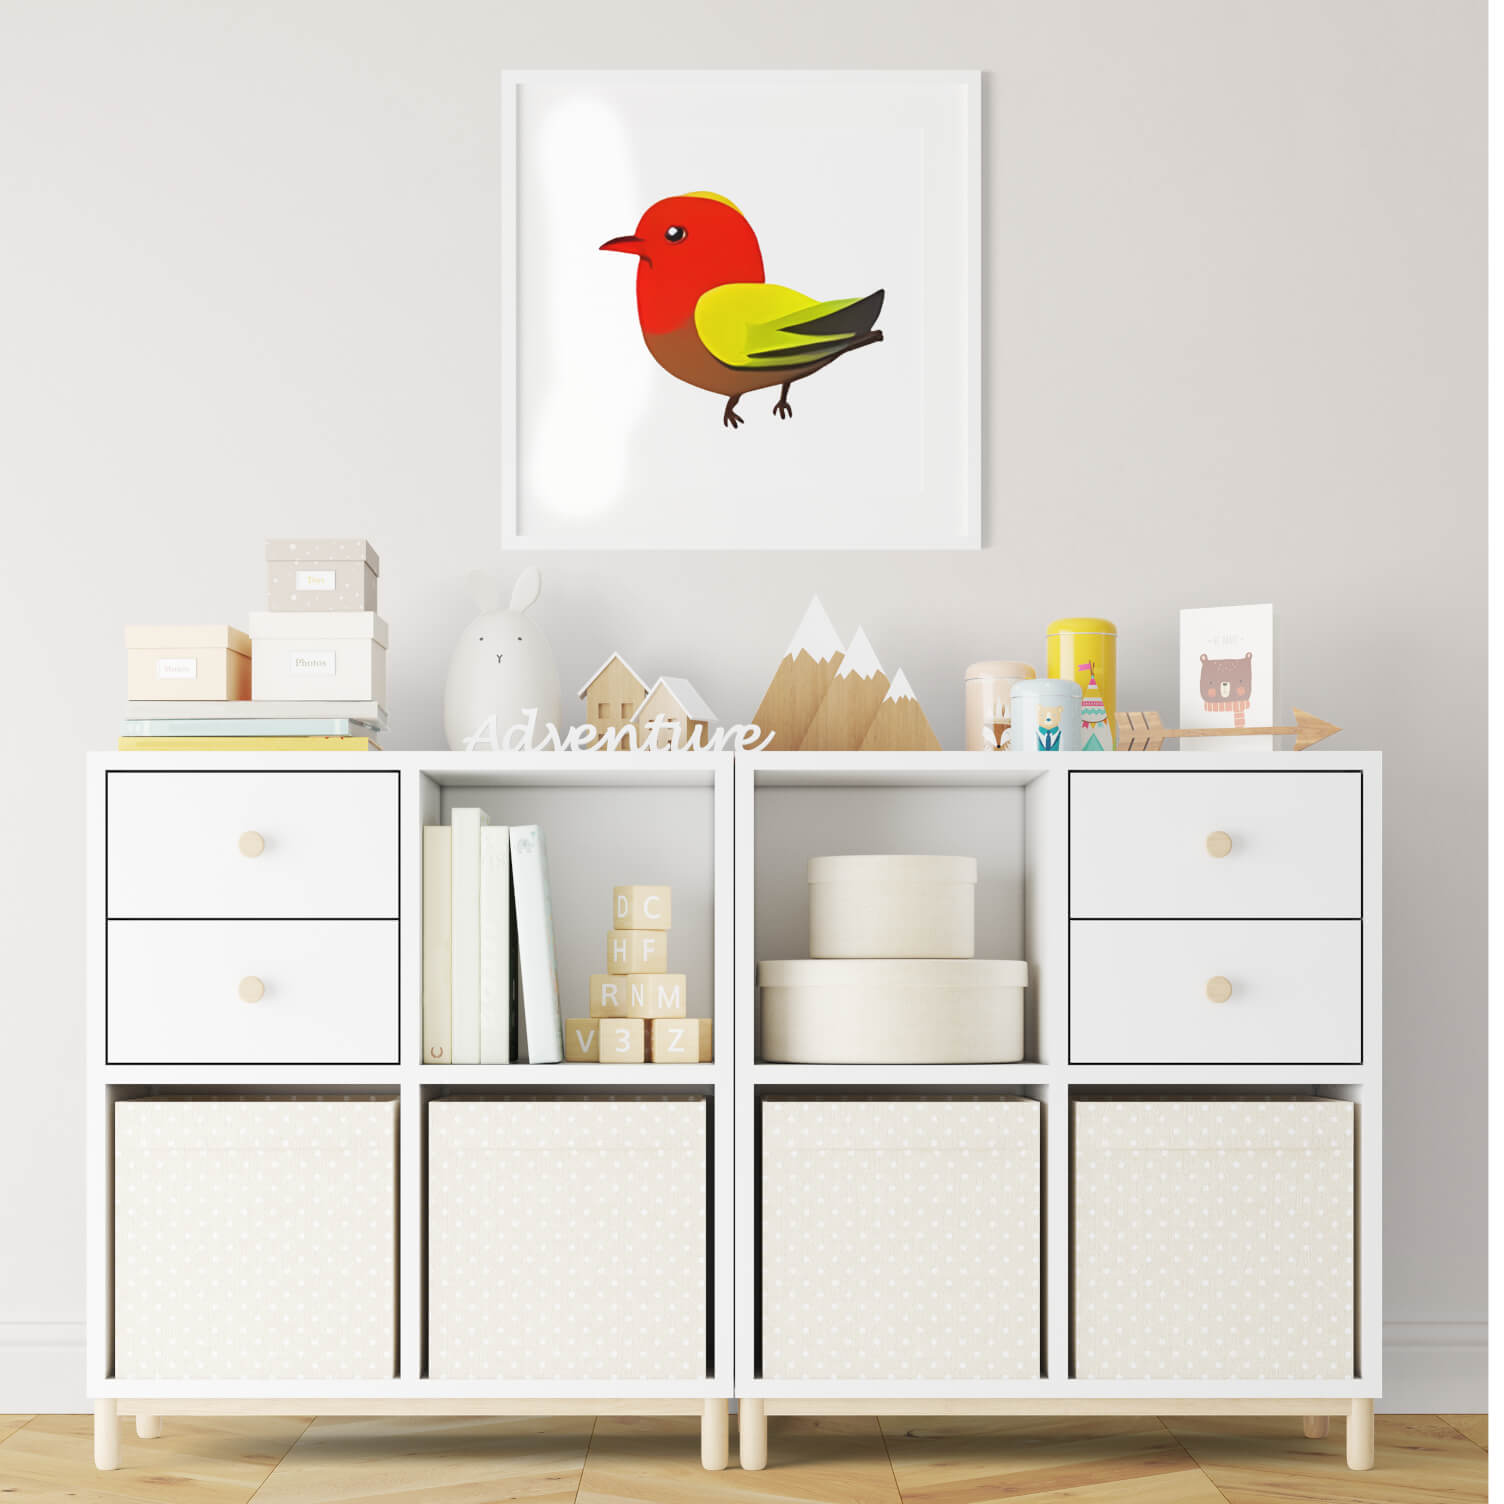 Modern Bird Decor Collection - Wall Art Print Set of 4